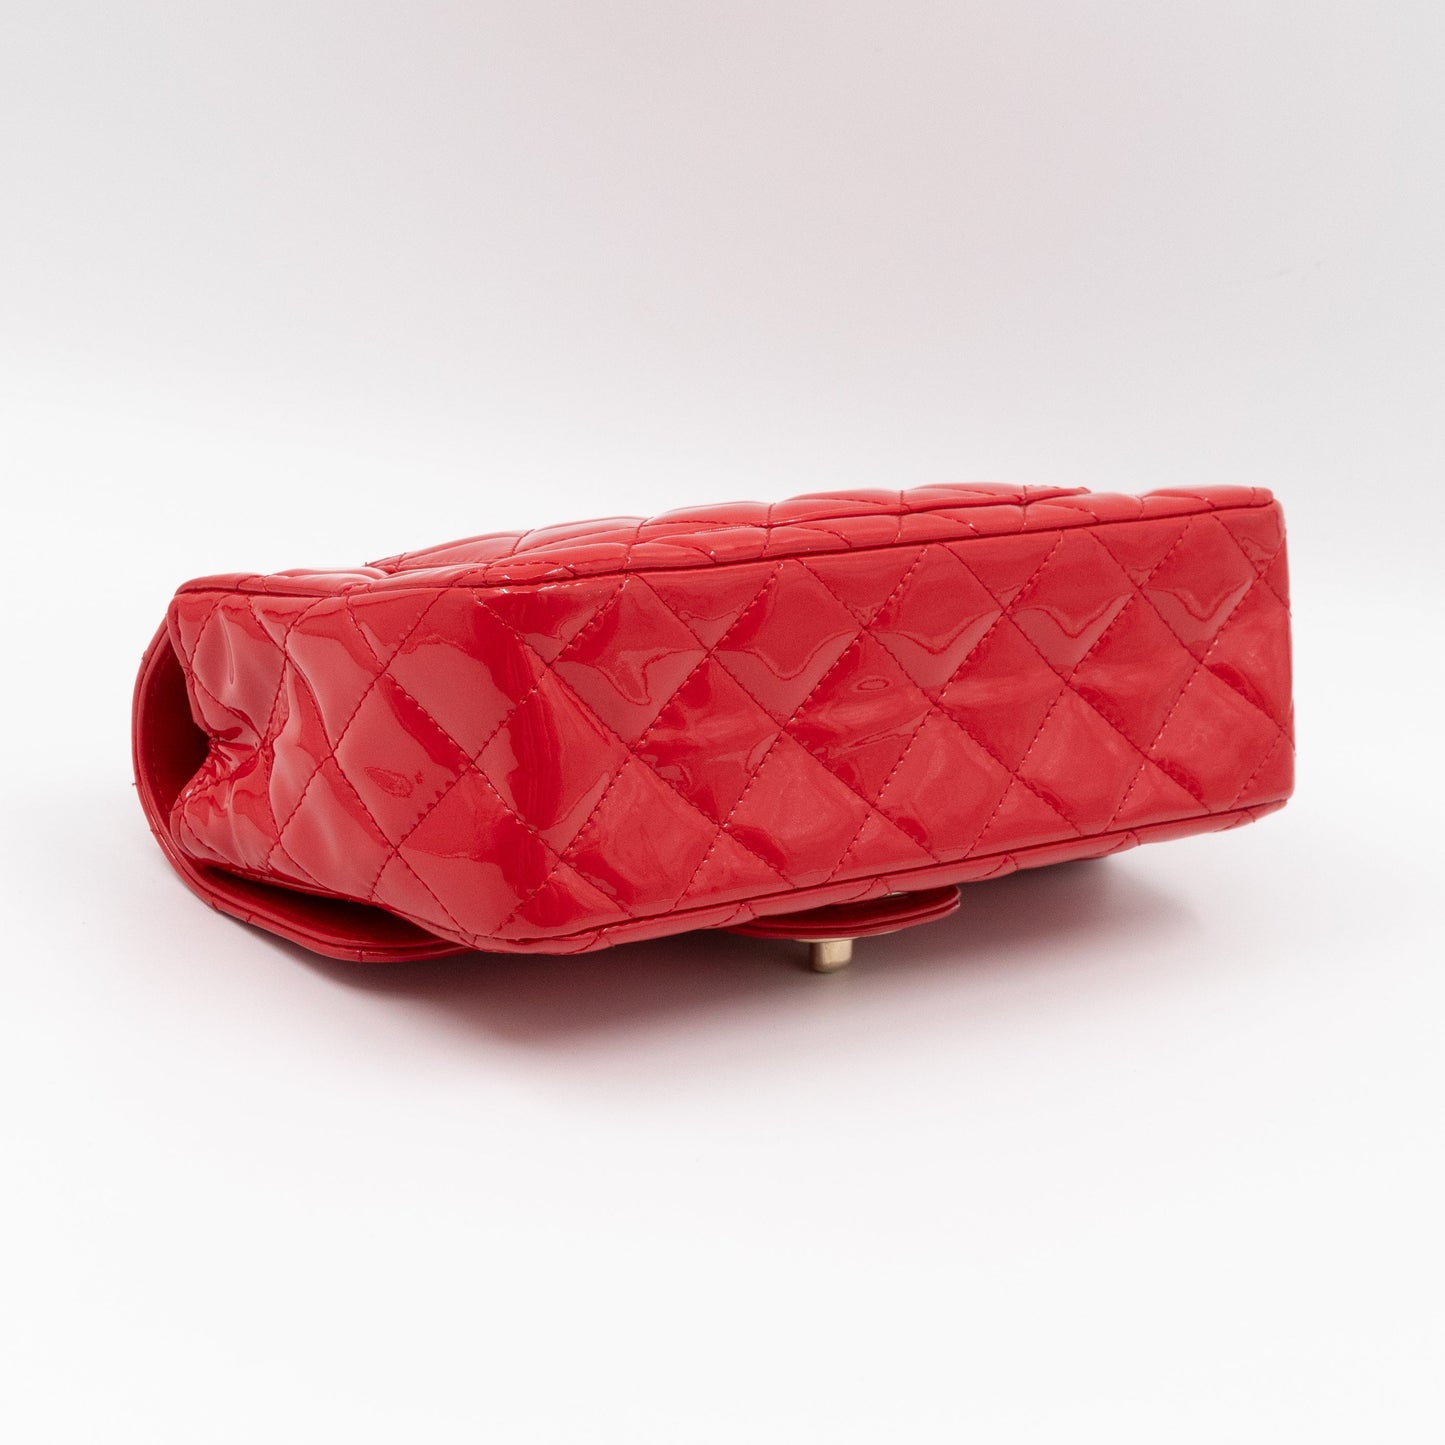 Classic Mini Rectangular Red Patent Leather